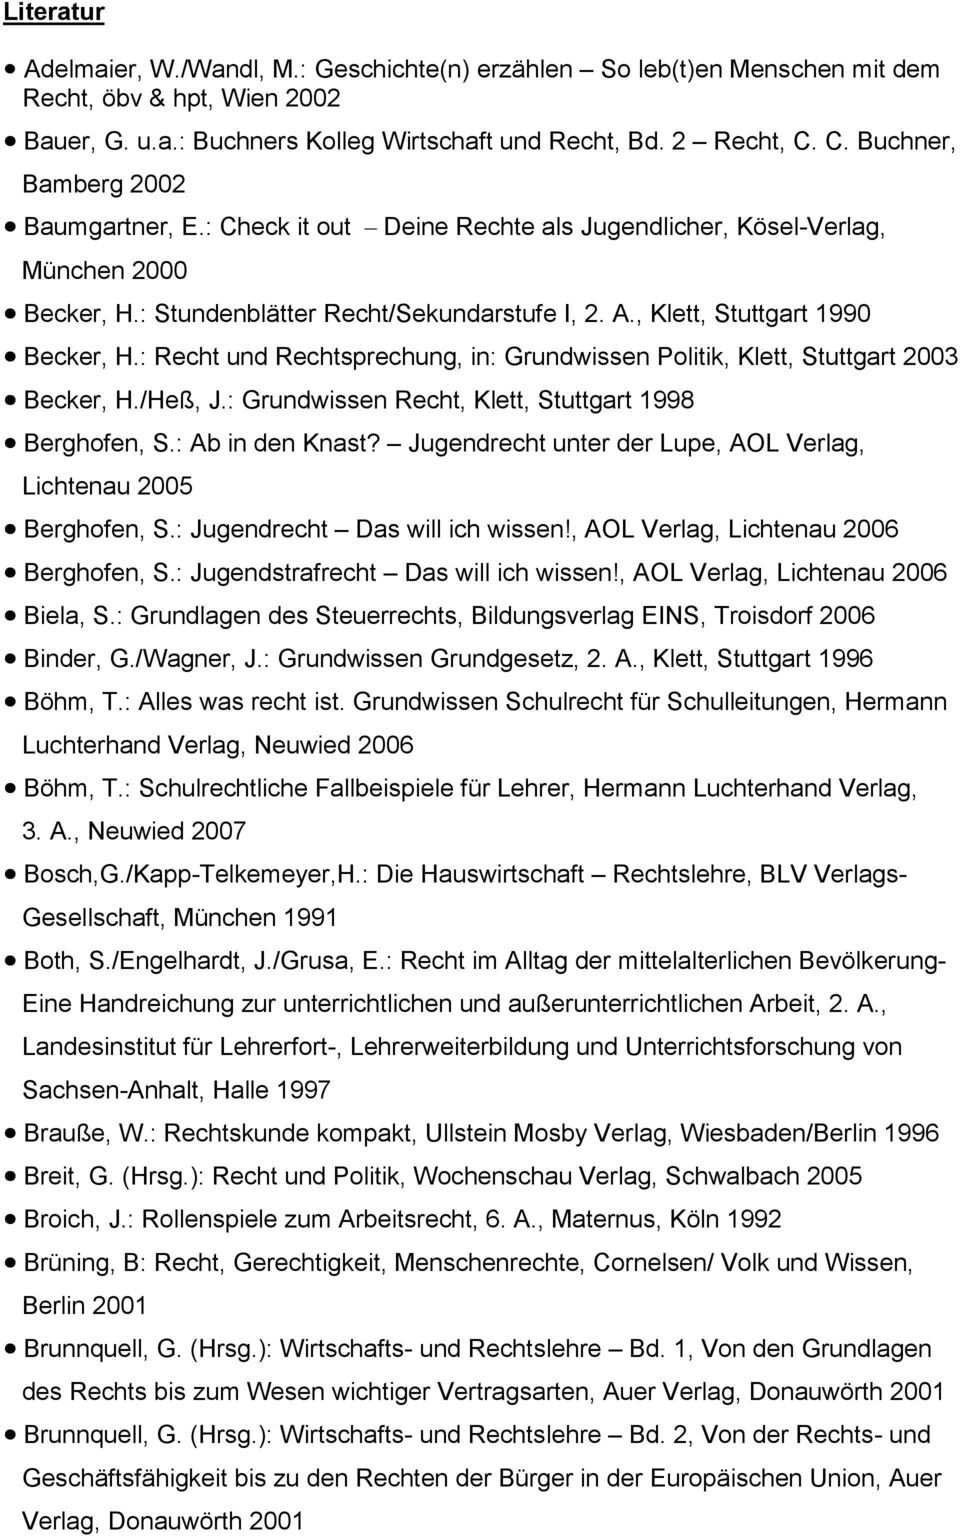 Becker, H.: Recht und Rechtsprechung, in: Grundwissen Politik, Klett, Stuttgart 2003! Becker, H./Heß, J.: Grundwissen Recht, Klett, Stuttgart 1998! Berghofen, S.: Ab in den Knast?